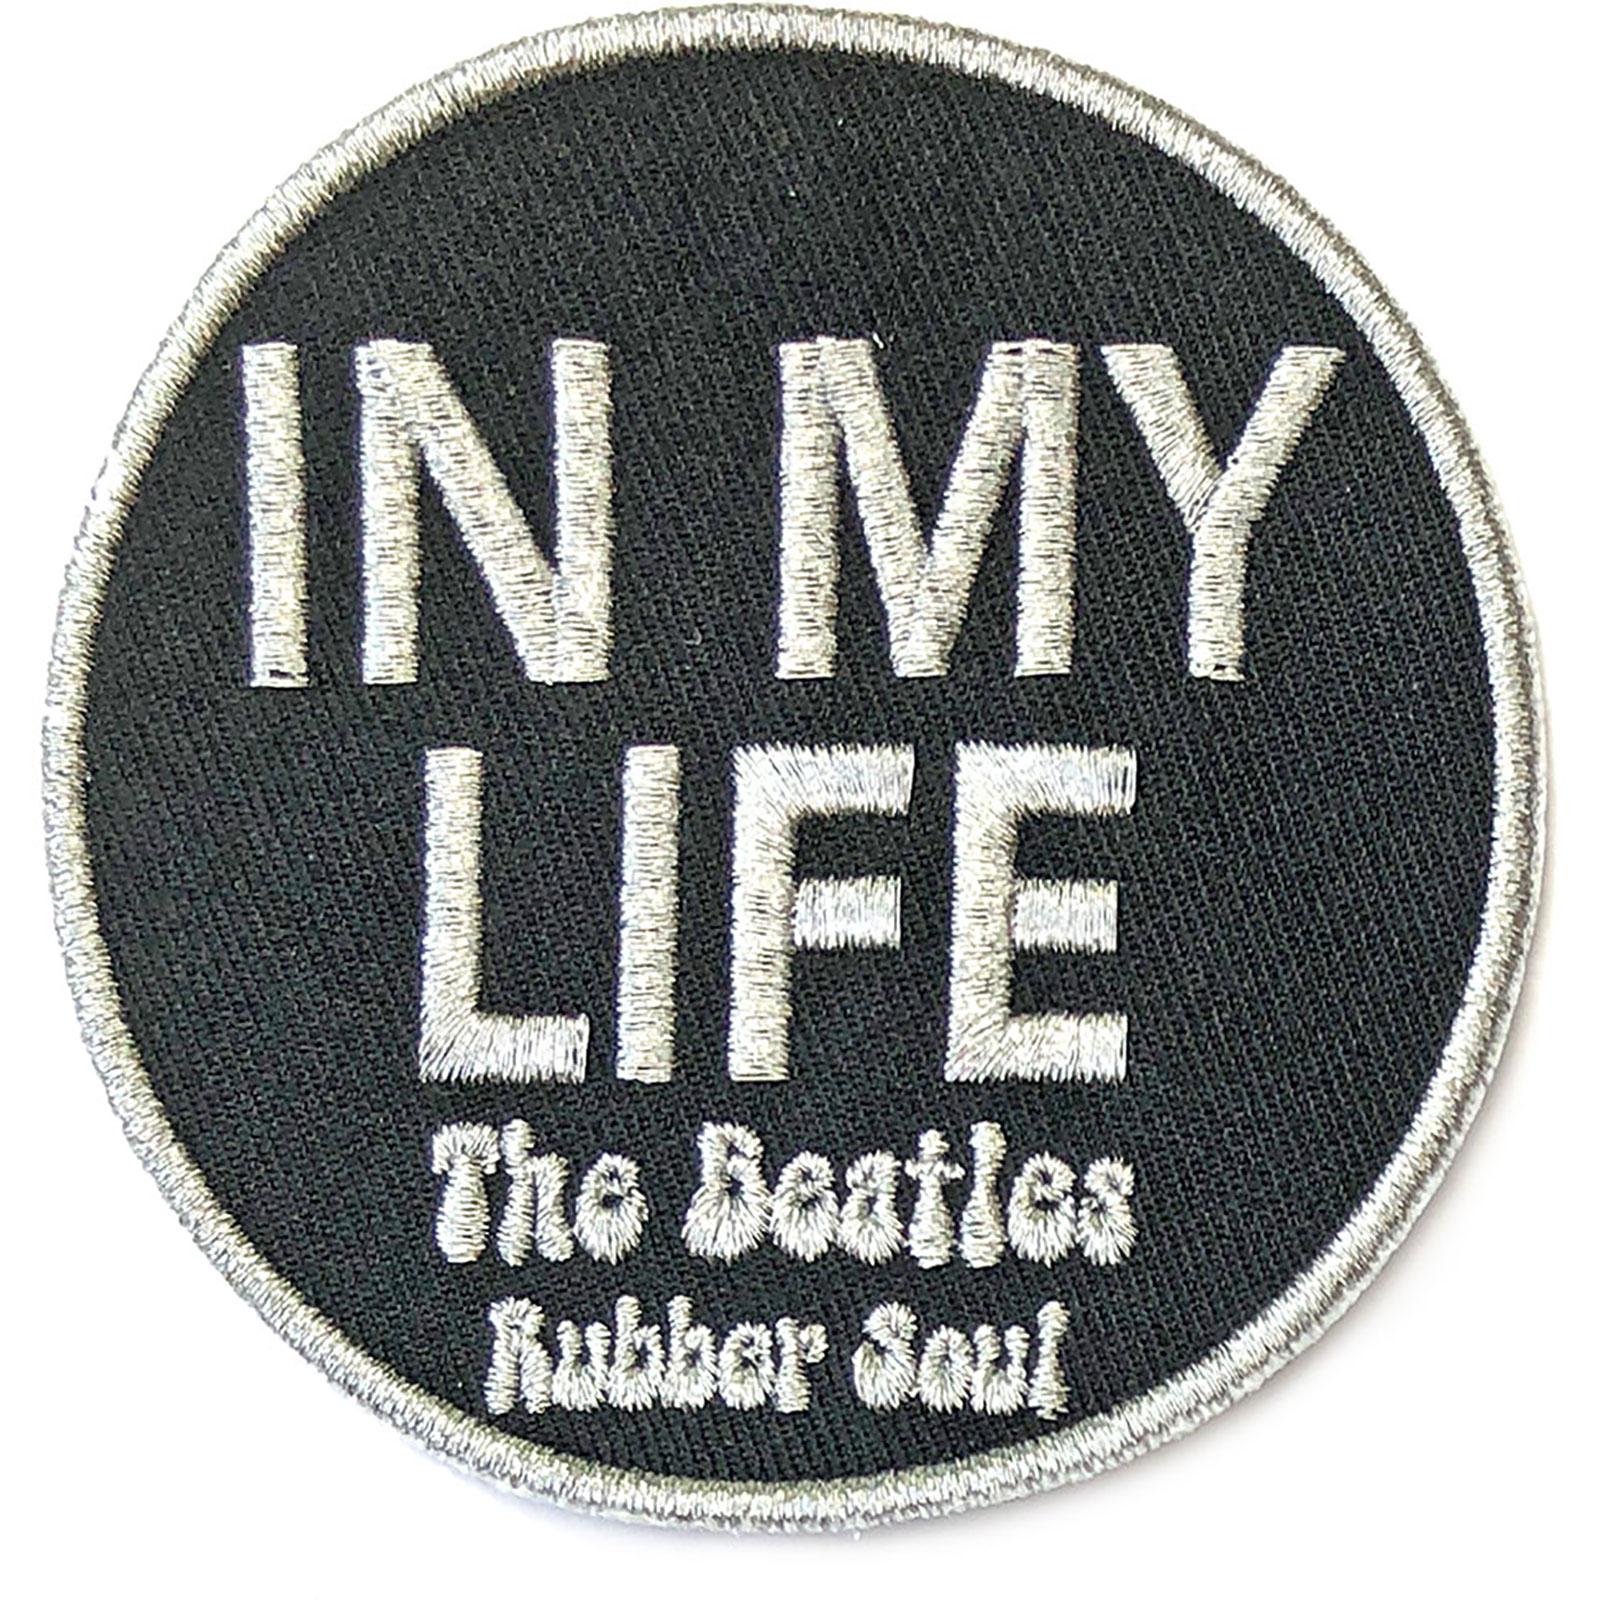 (ビートルズ) The Beatles オフィシャル商品 In My Life バッジ 【海外通販】